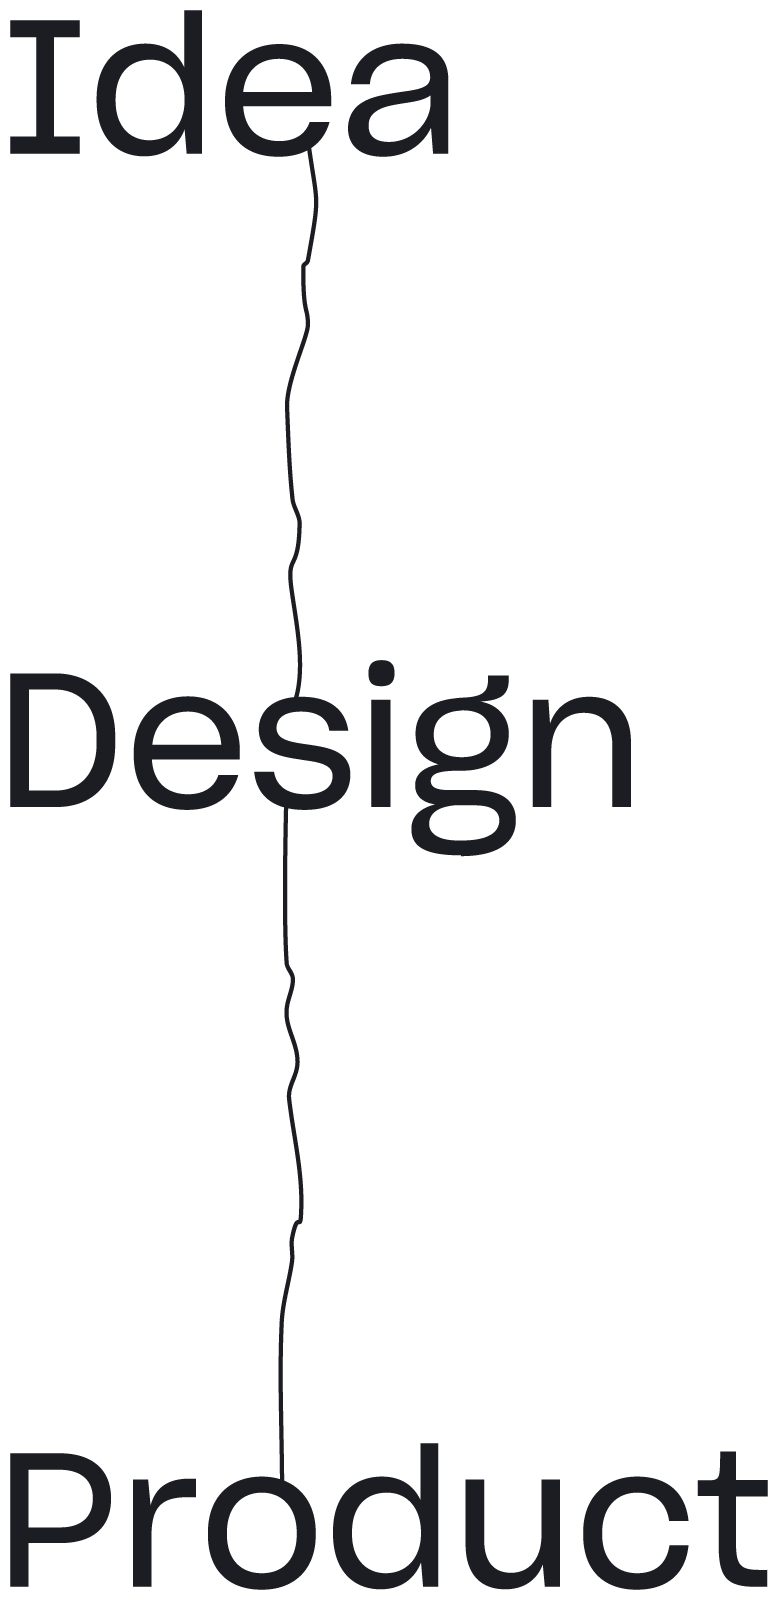 Idea Design Product